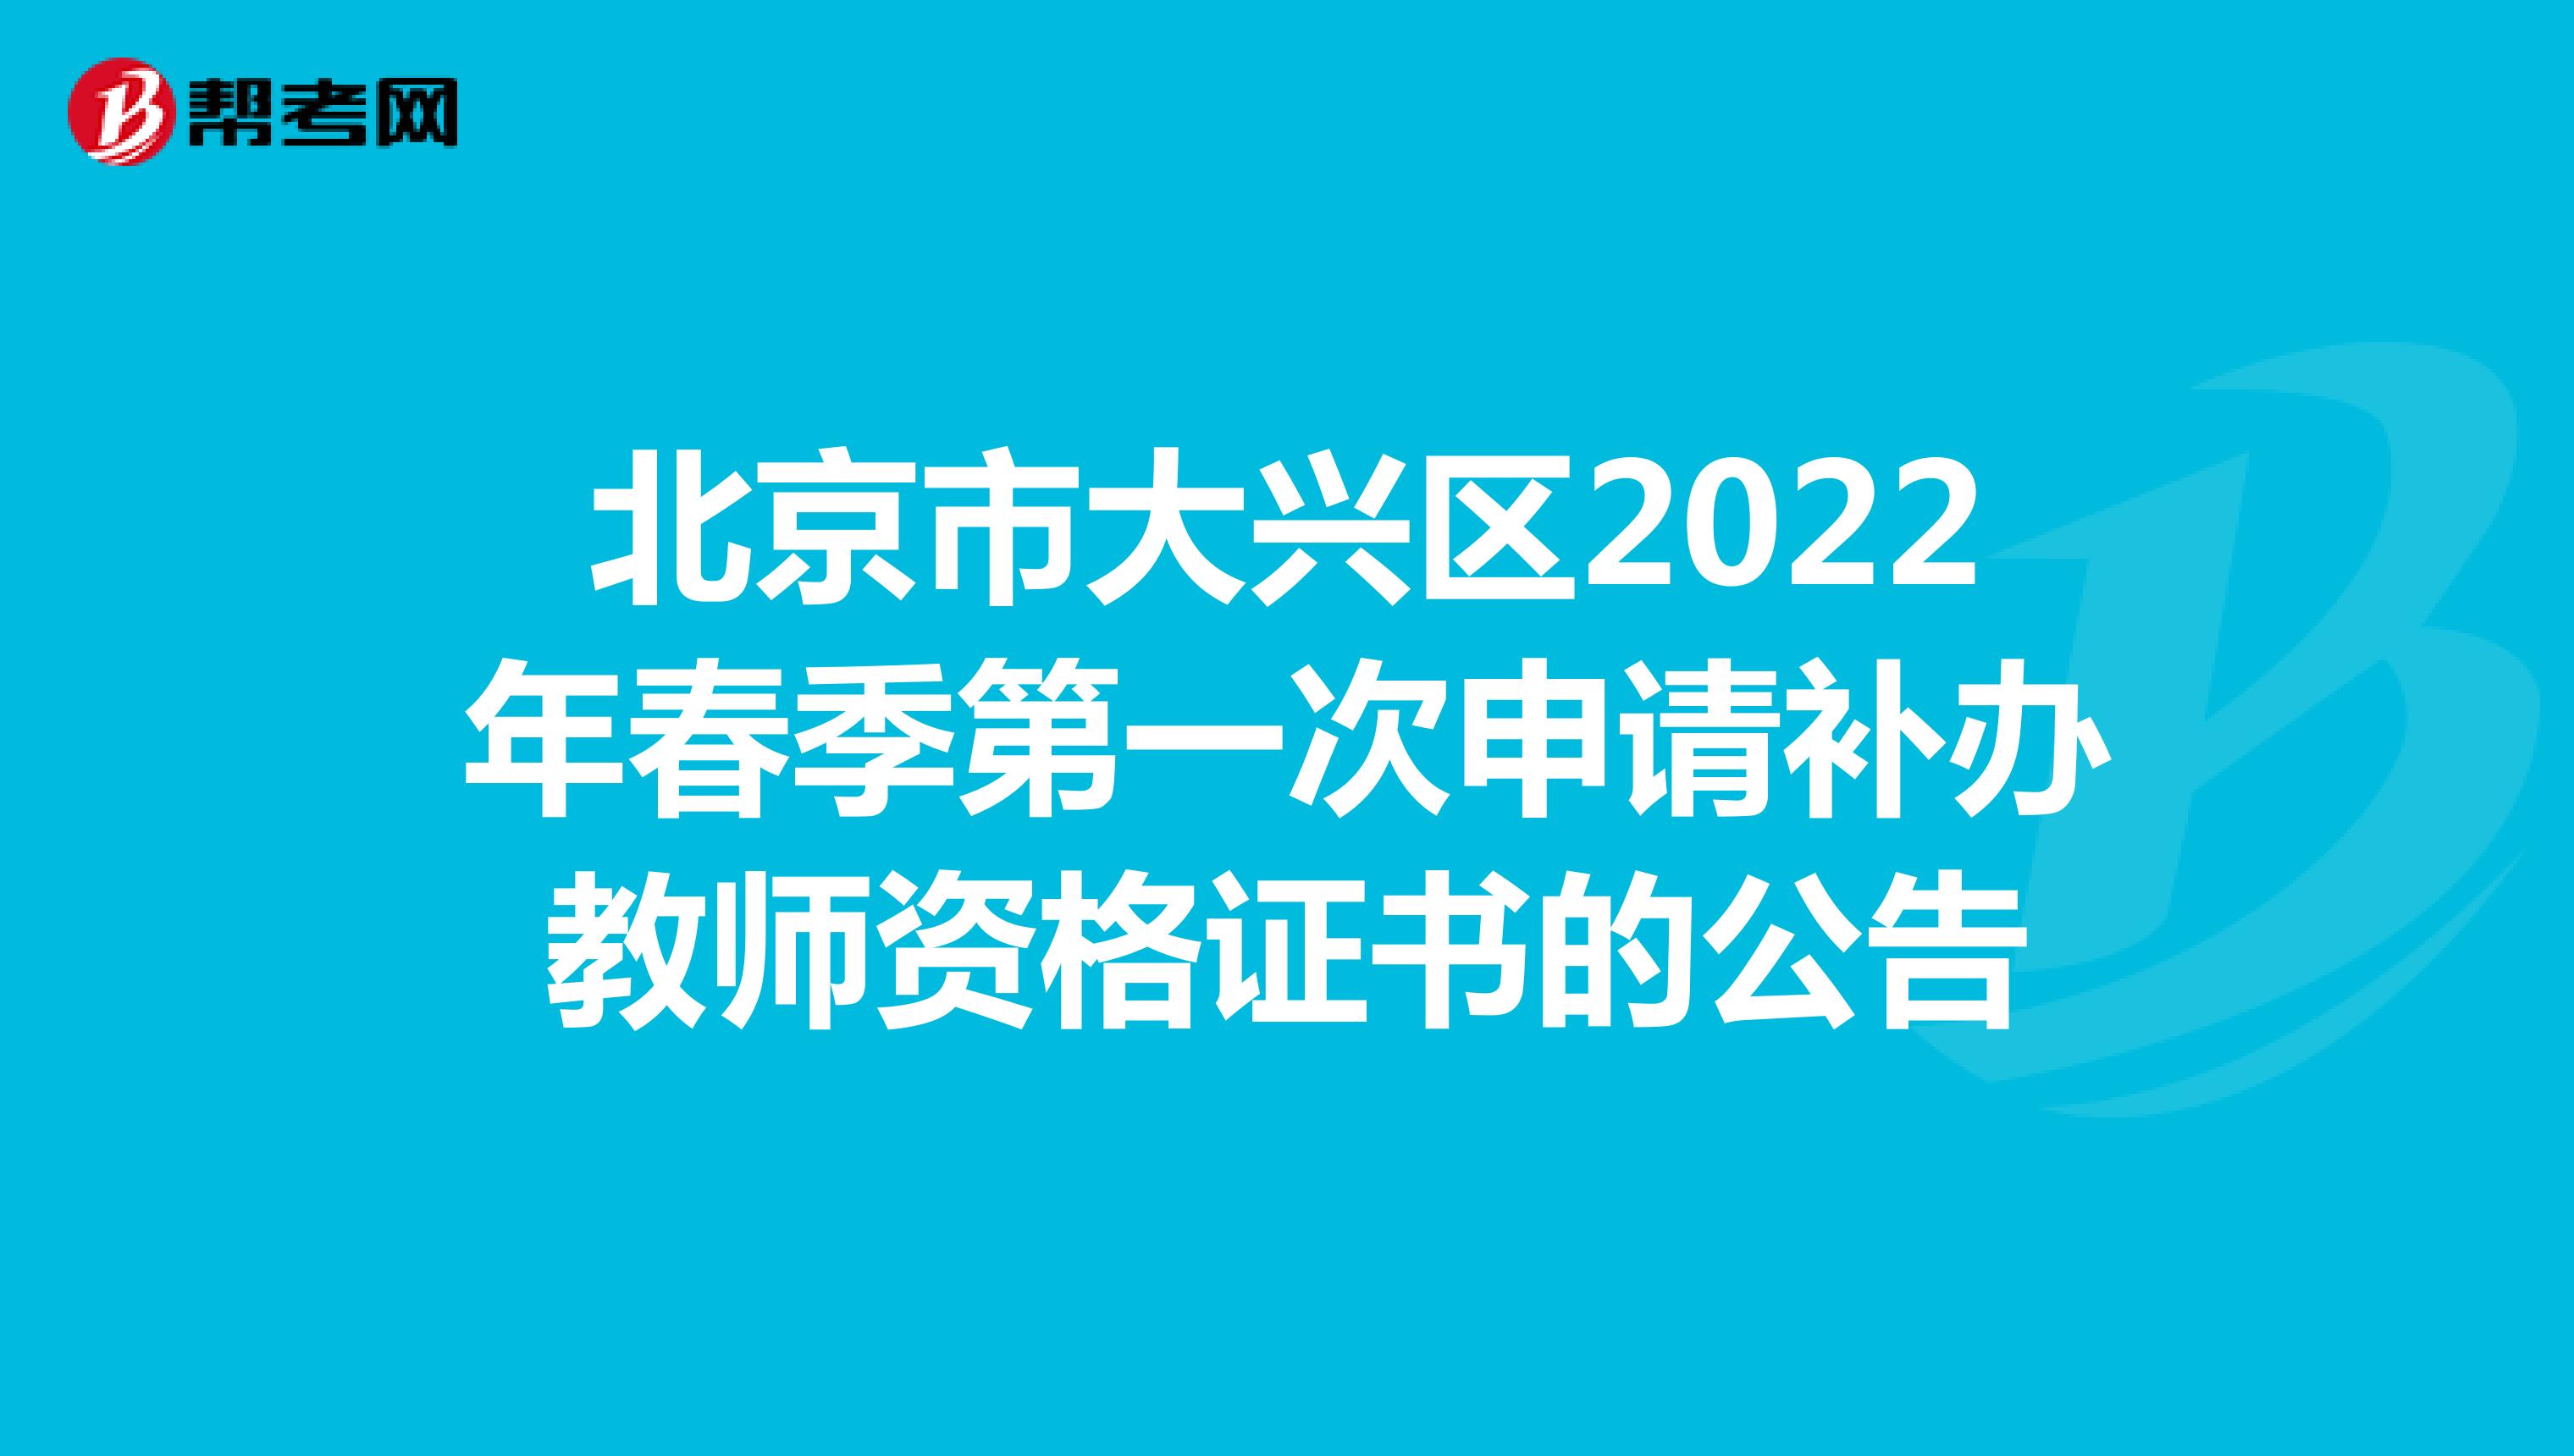 北京市大兴区2022年春季第一次申请补办教师资格证书的公告